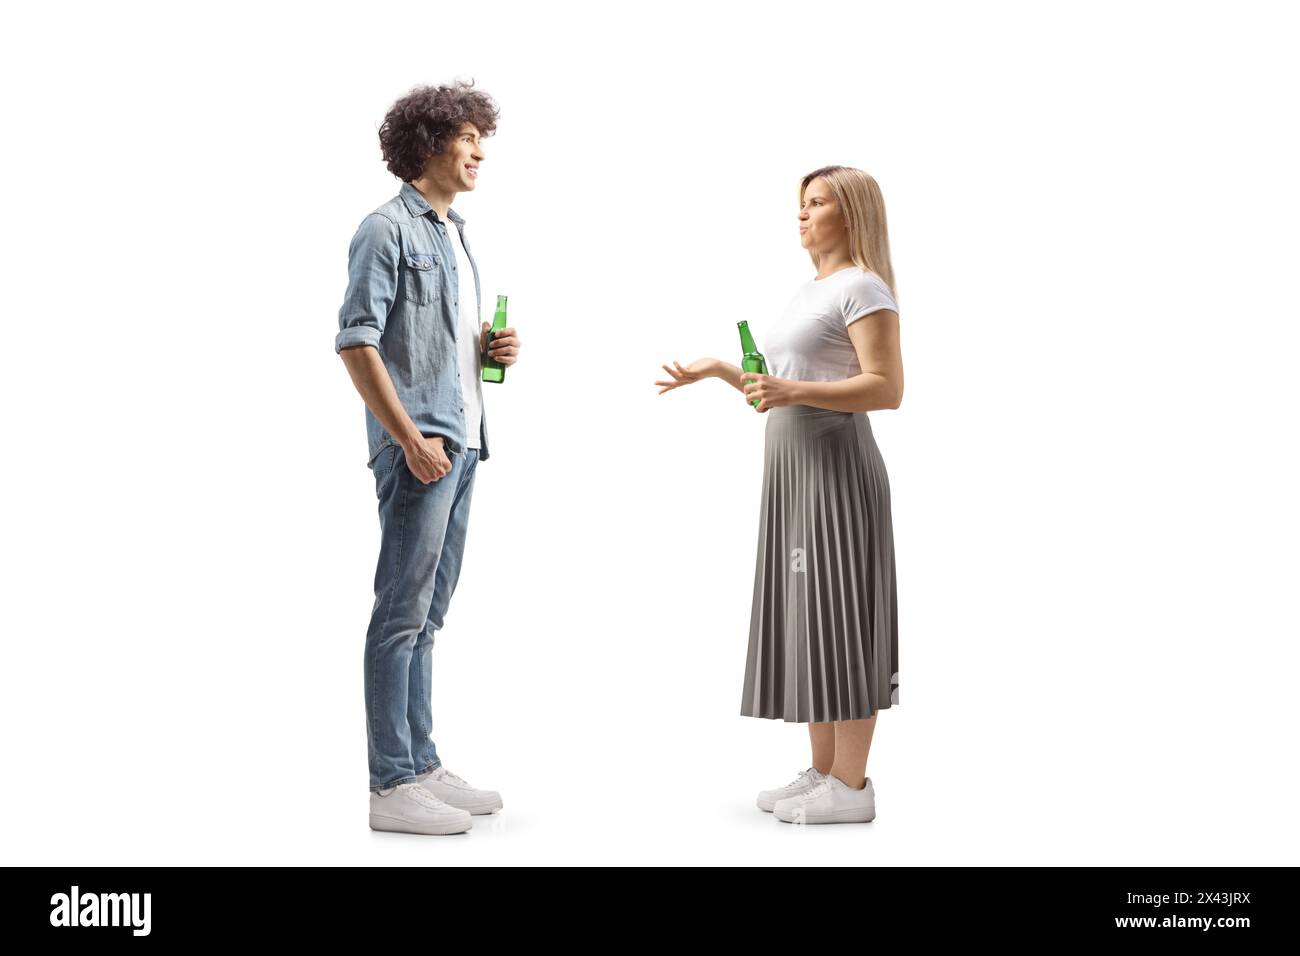 Plein plan de profil d'un jeune homme et d'une femme tenant des bouteilles de bière et parlant isolé sur fond blanc Banque D'Images